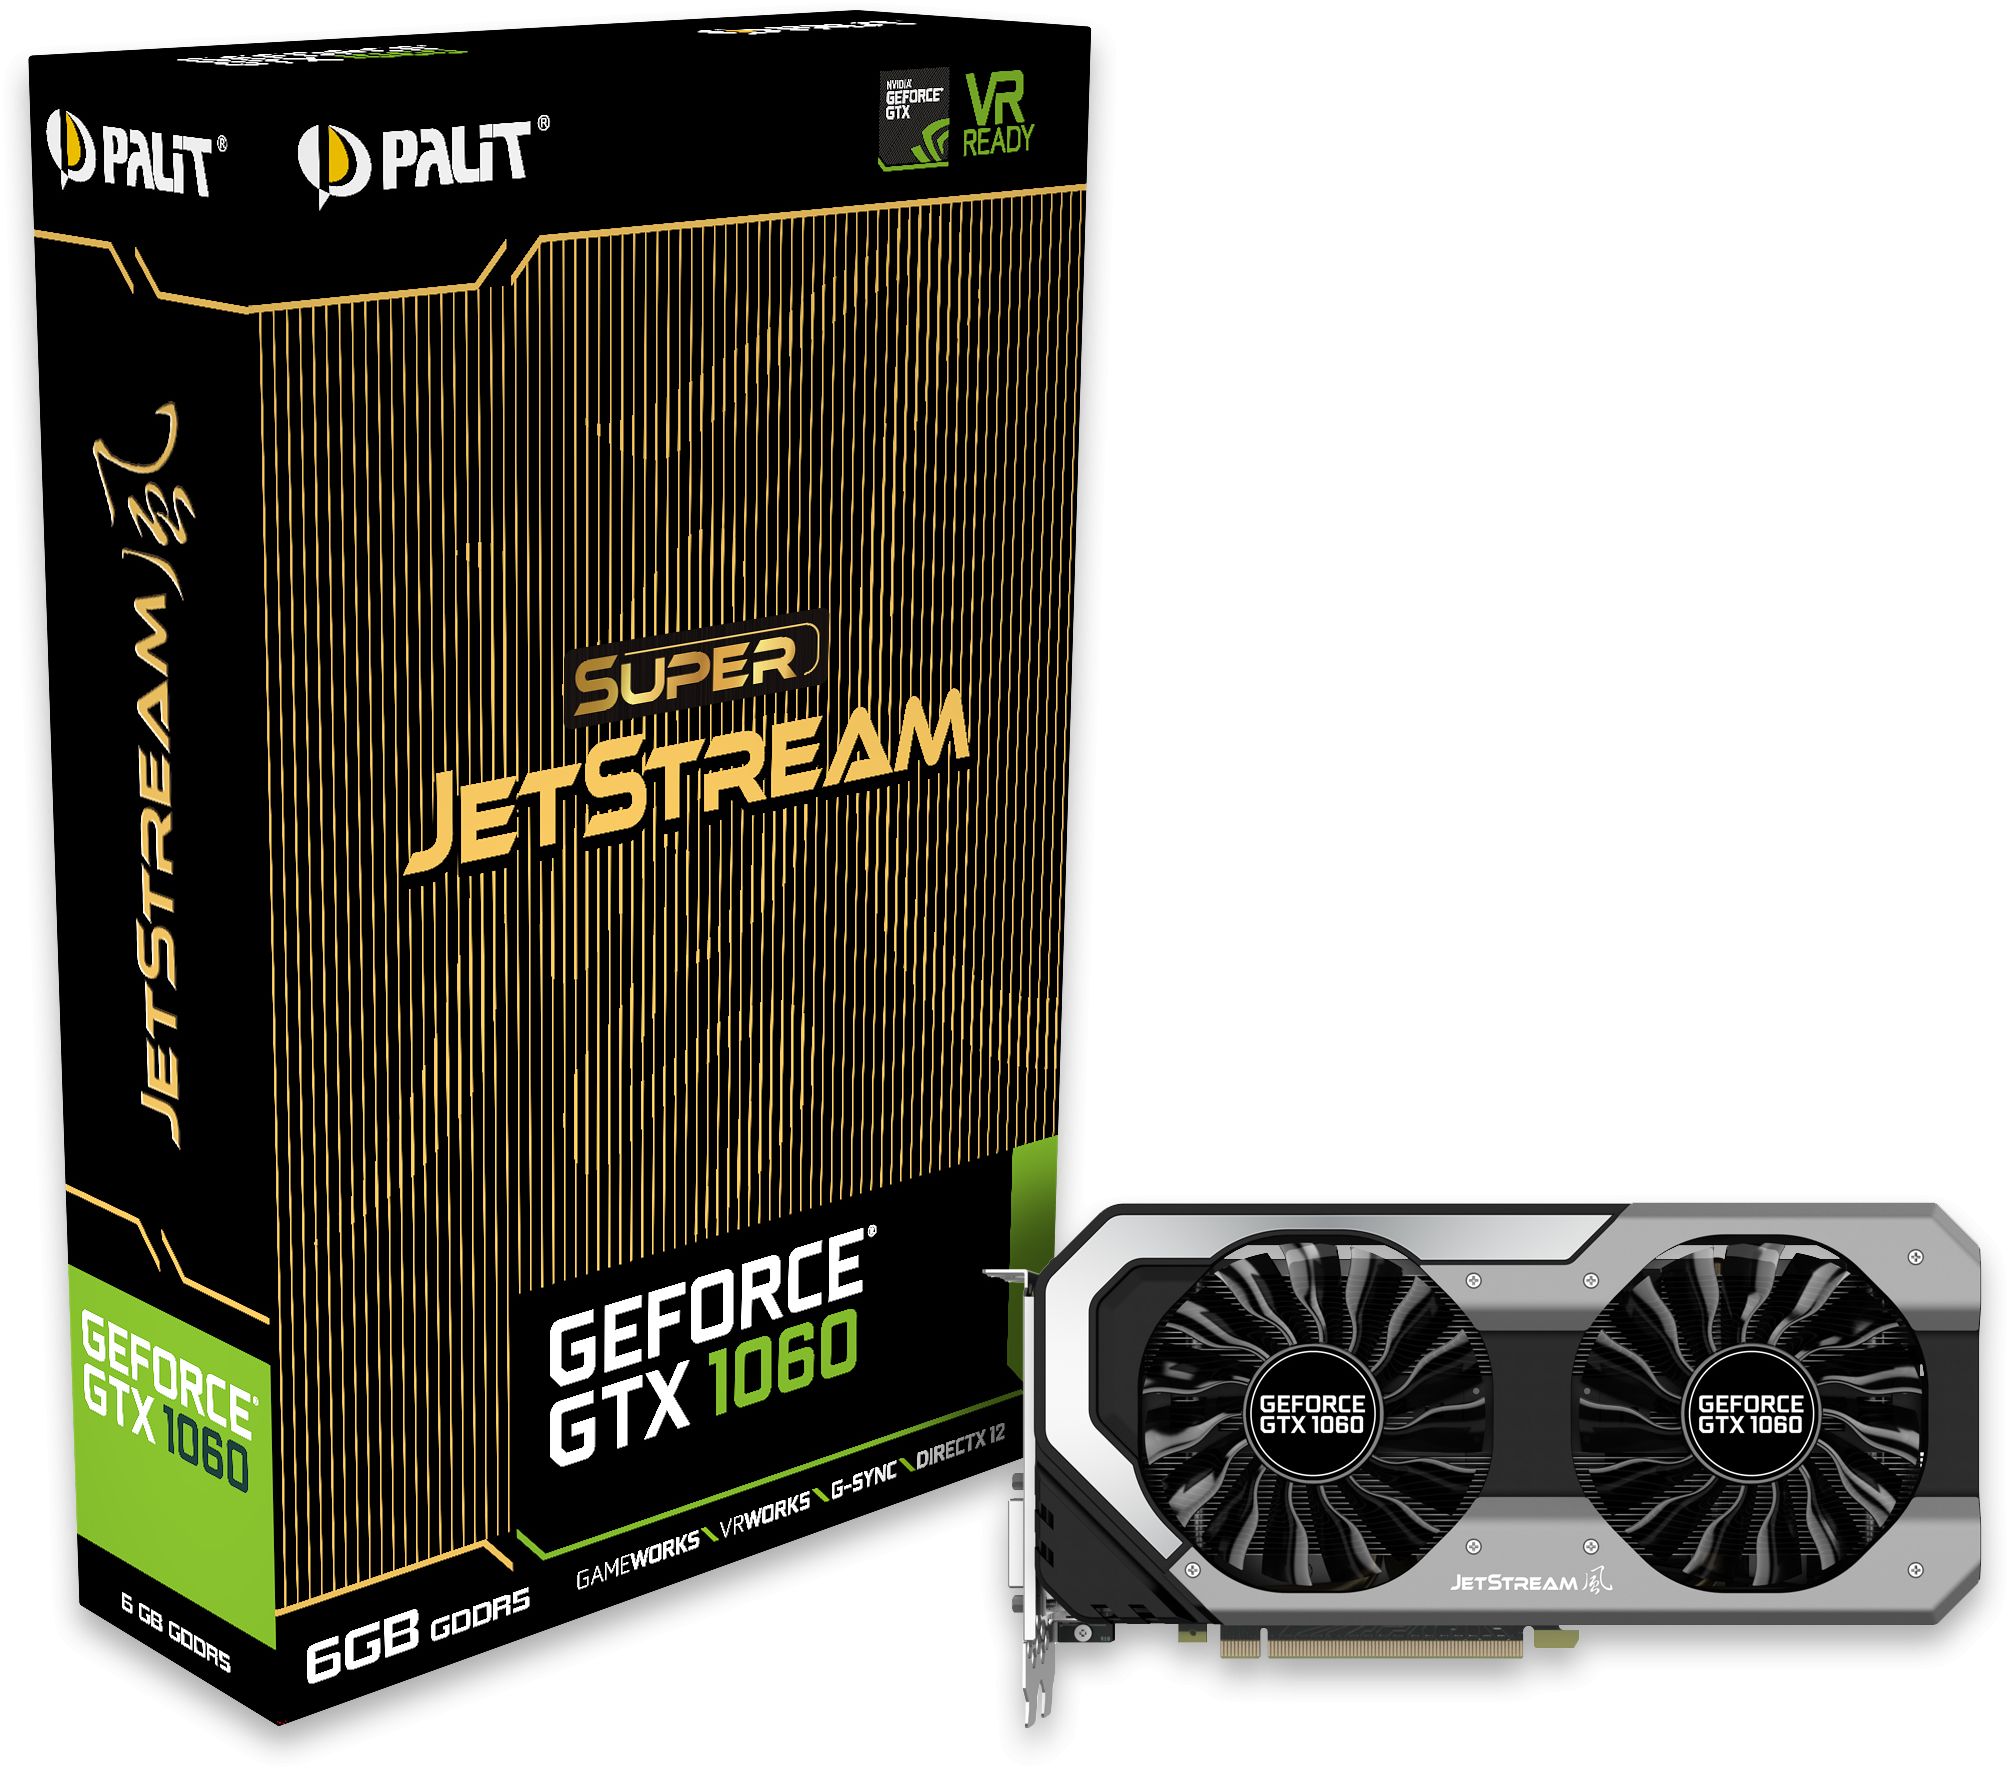 Geforce GTX 1060 Super JetStream 6GB 